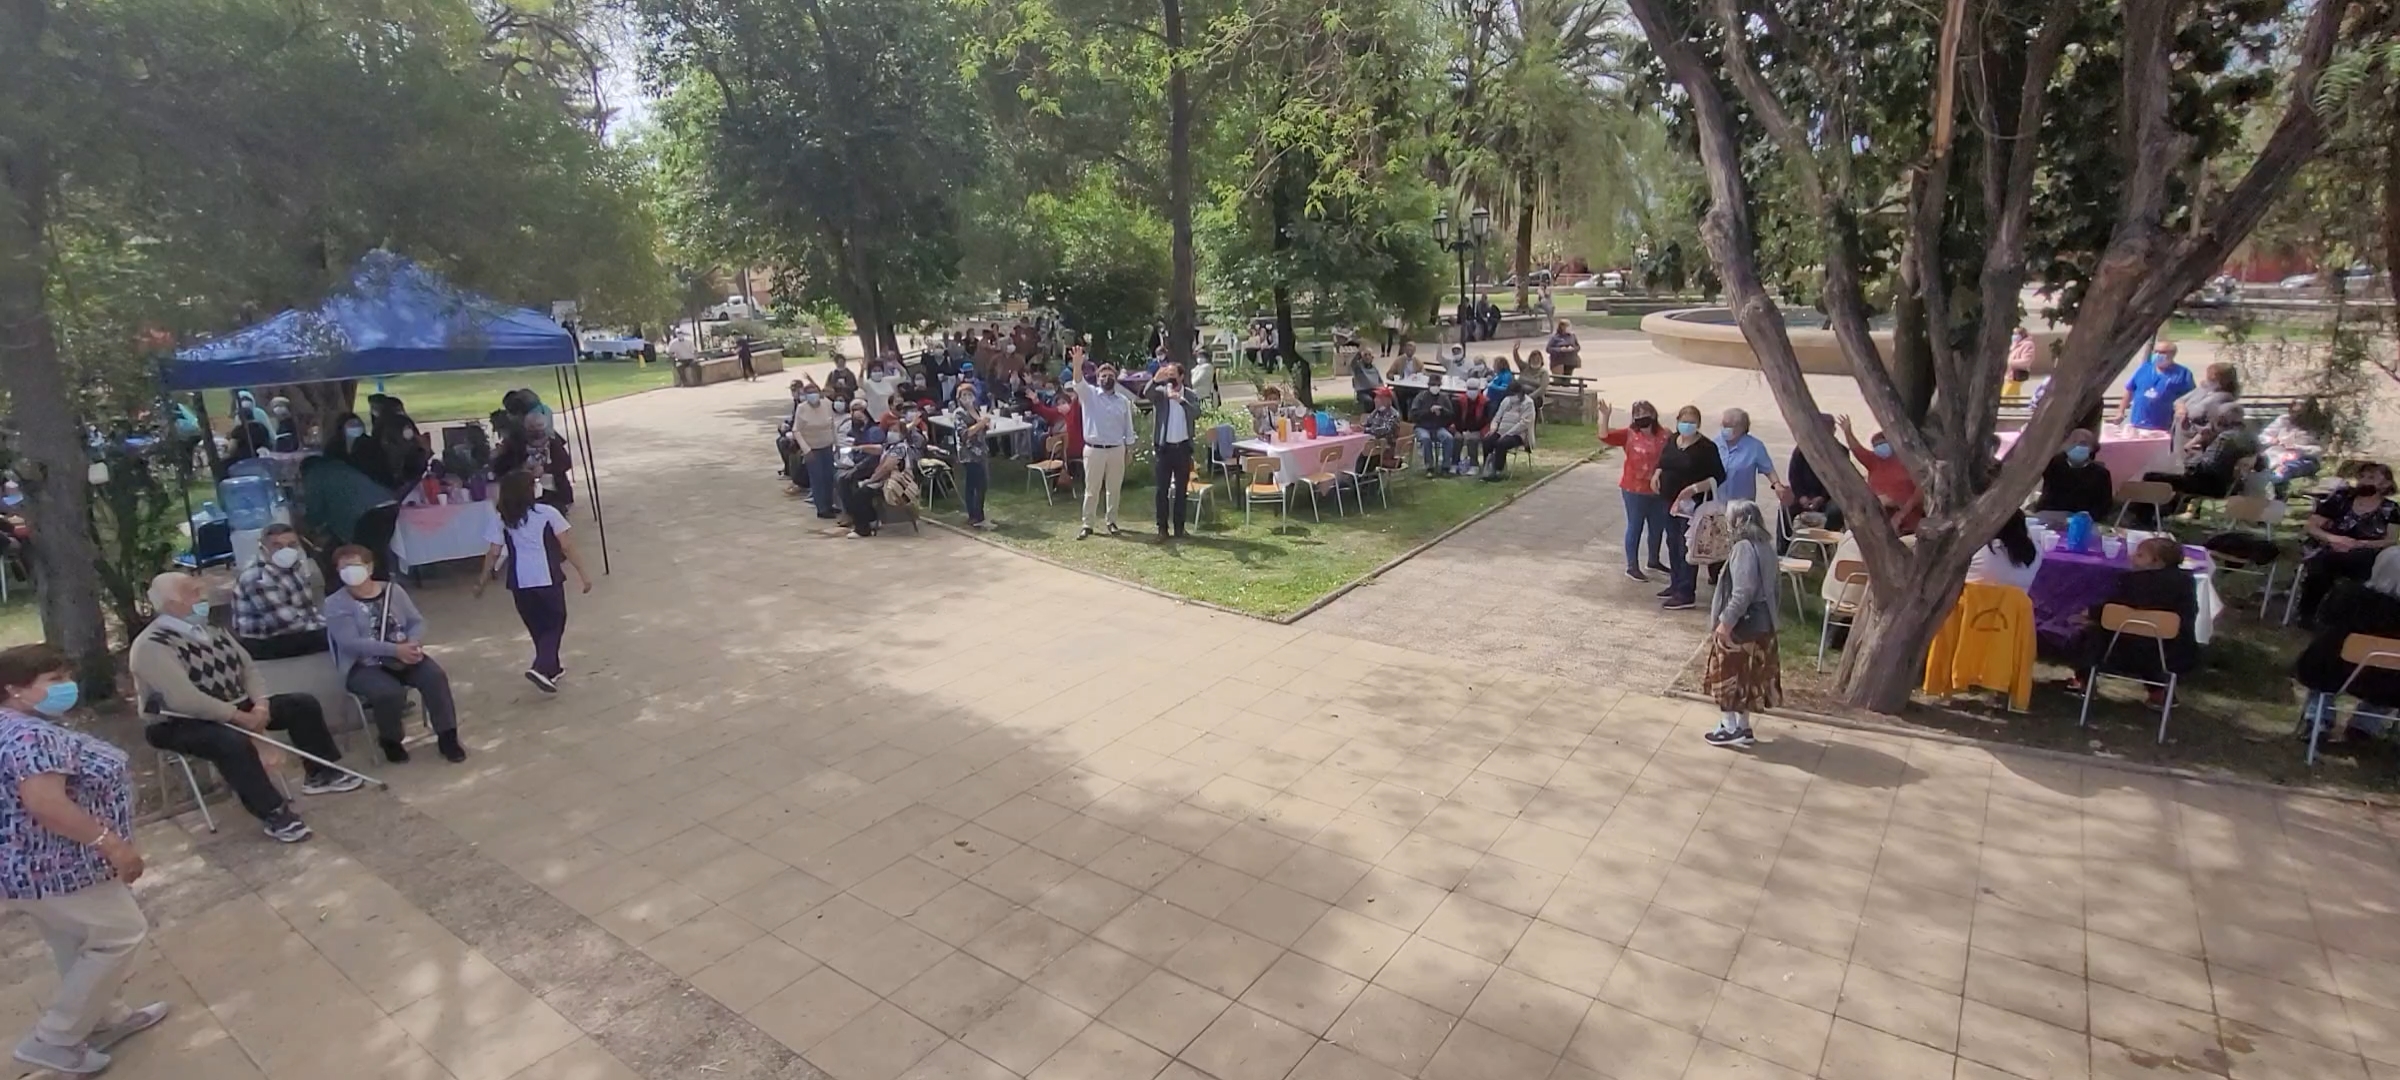 SAN ESTEBAN: ¡San Esteban celebró el Mes del Adulto Mayor!: Más de 600 participantes asistieron a esta entretenida actividad organizado por el Municipio